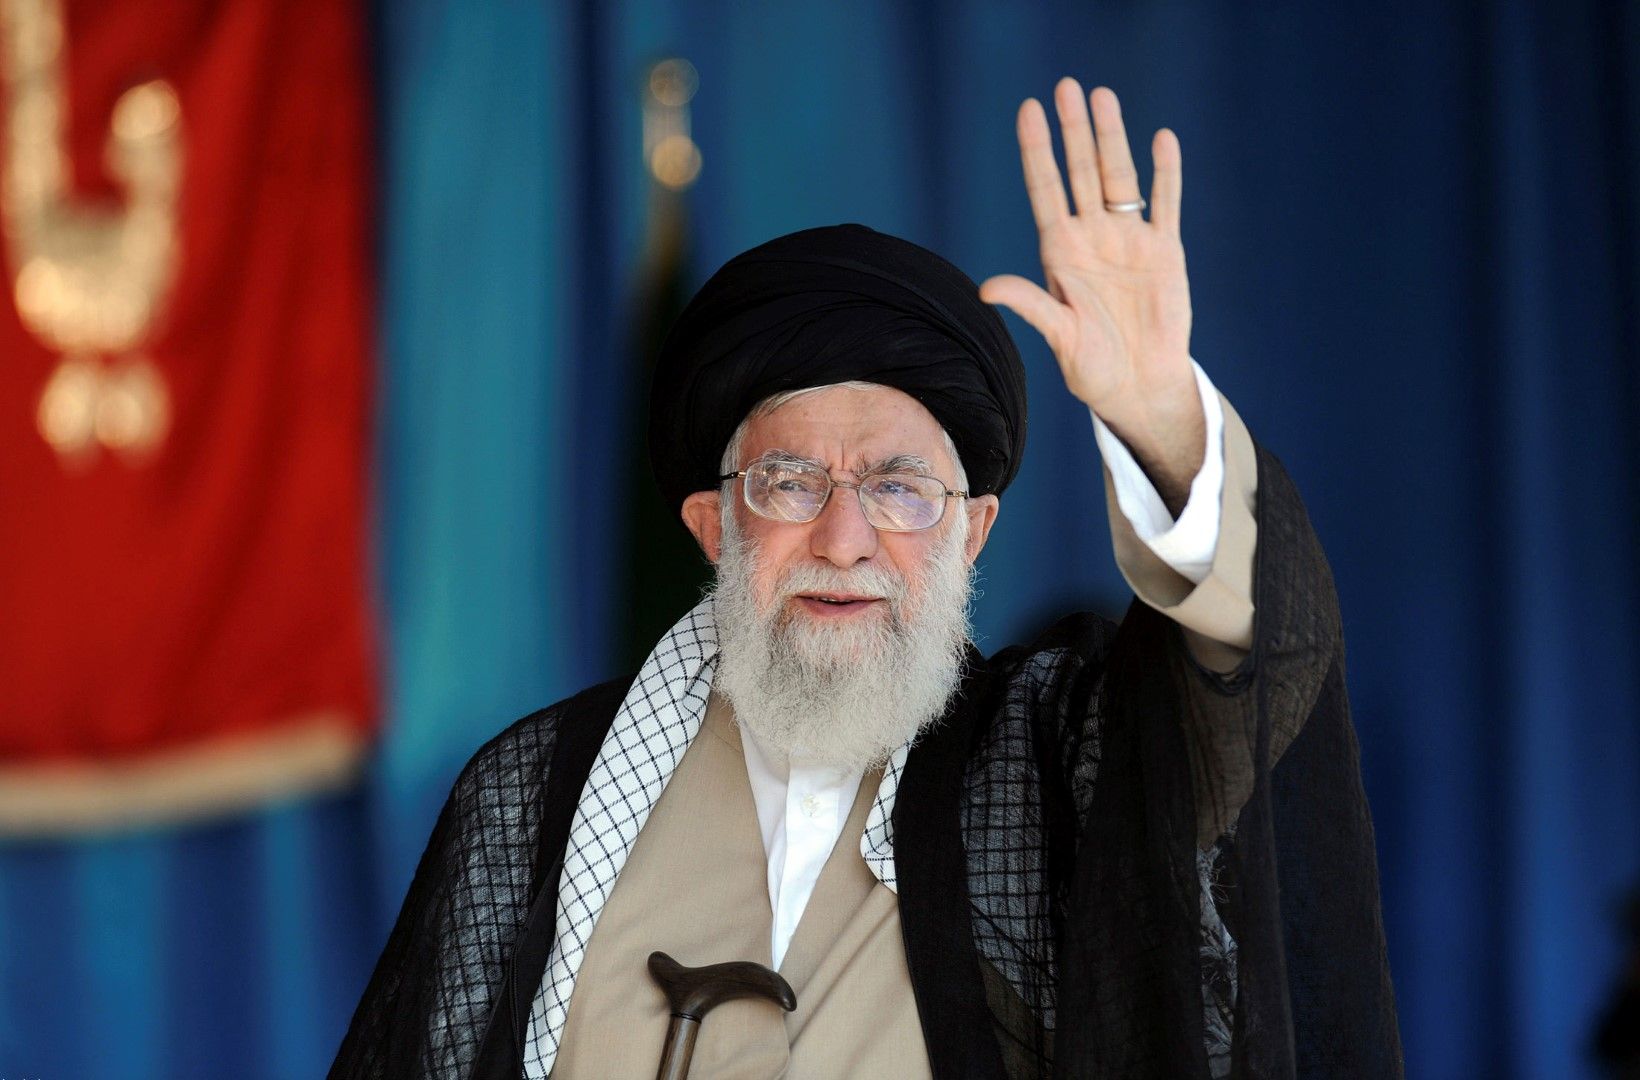 Върховният лидер на Иран аятолах Али Хаменей